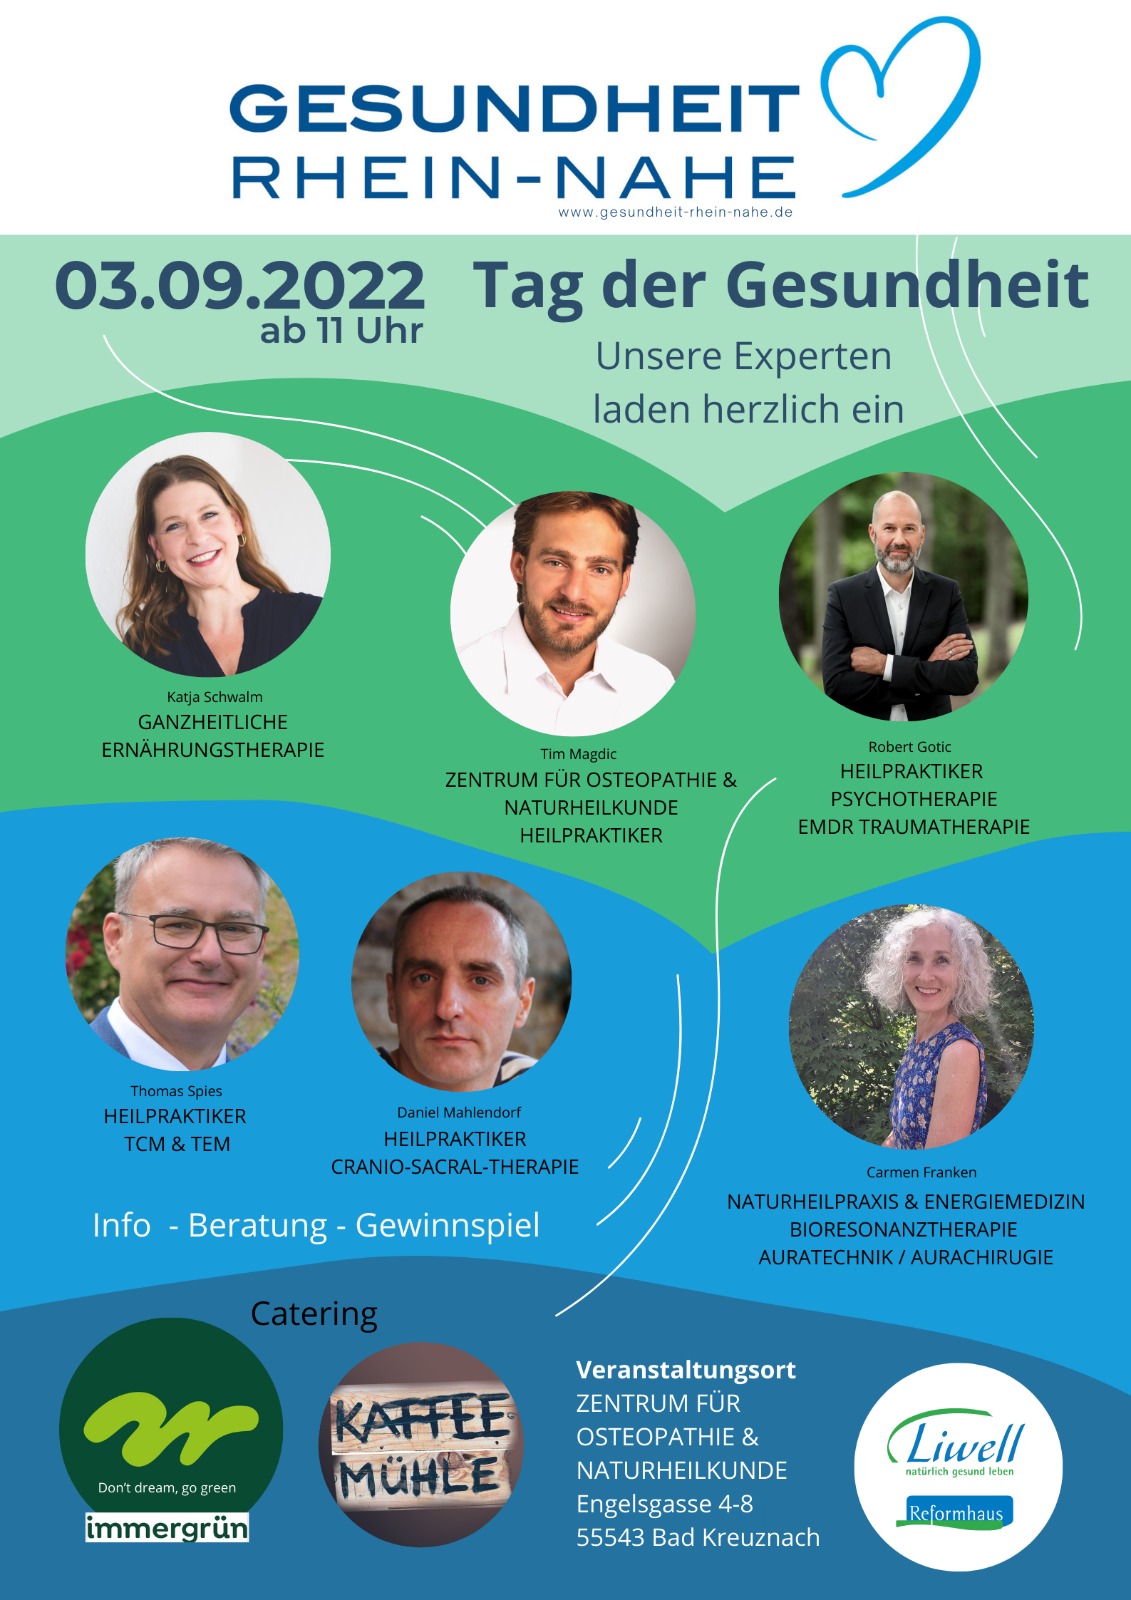 03. September 2022: Tag der Gesundheitsvorsorge in Bad Kreuznach